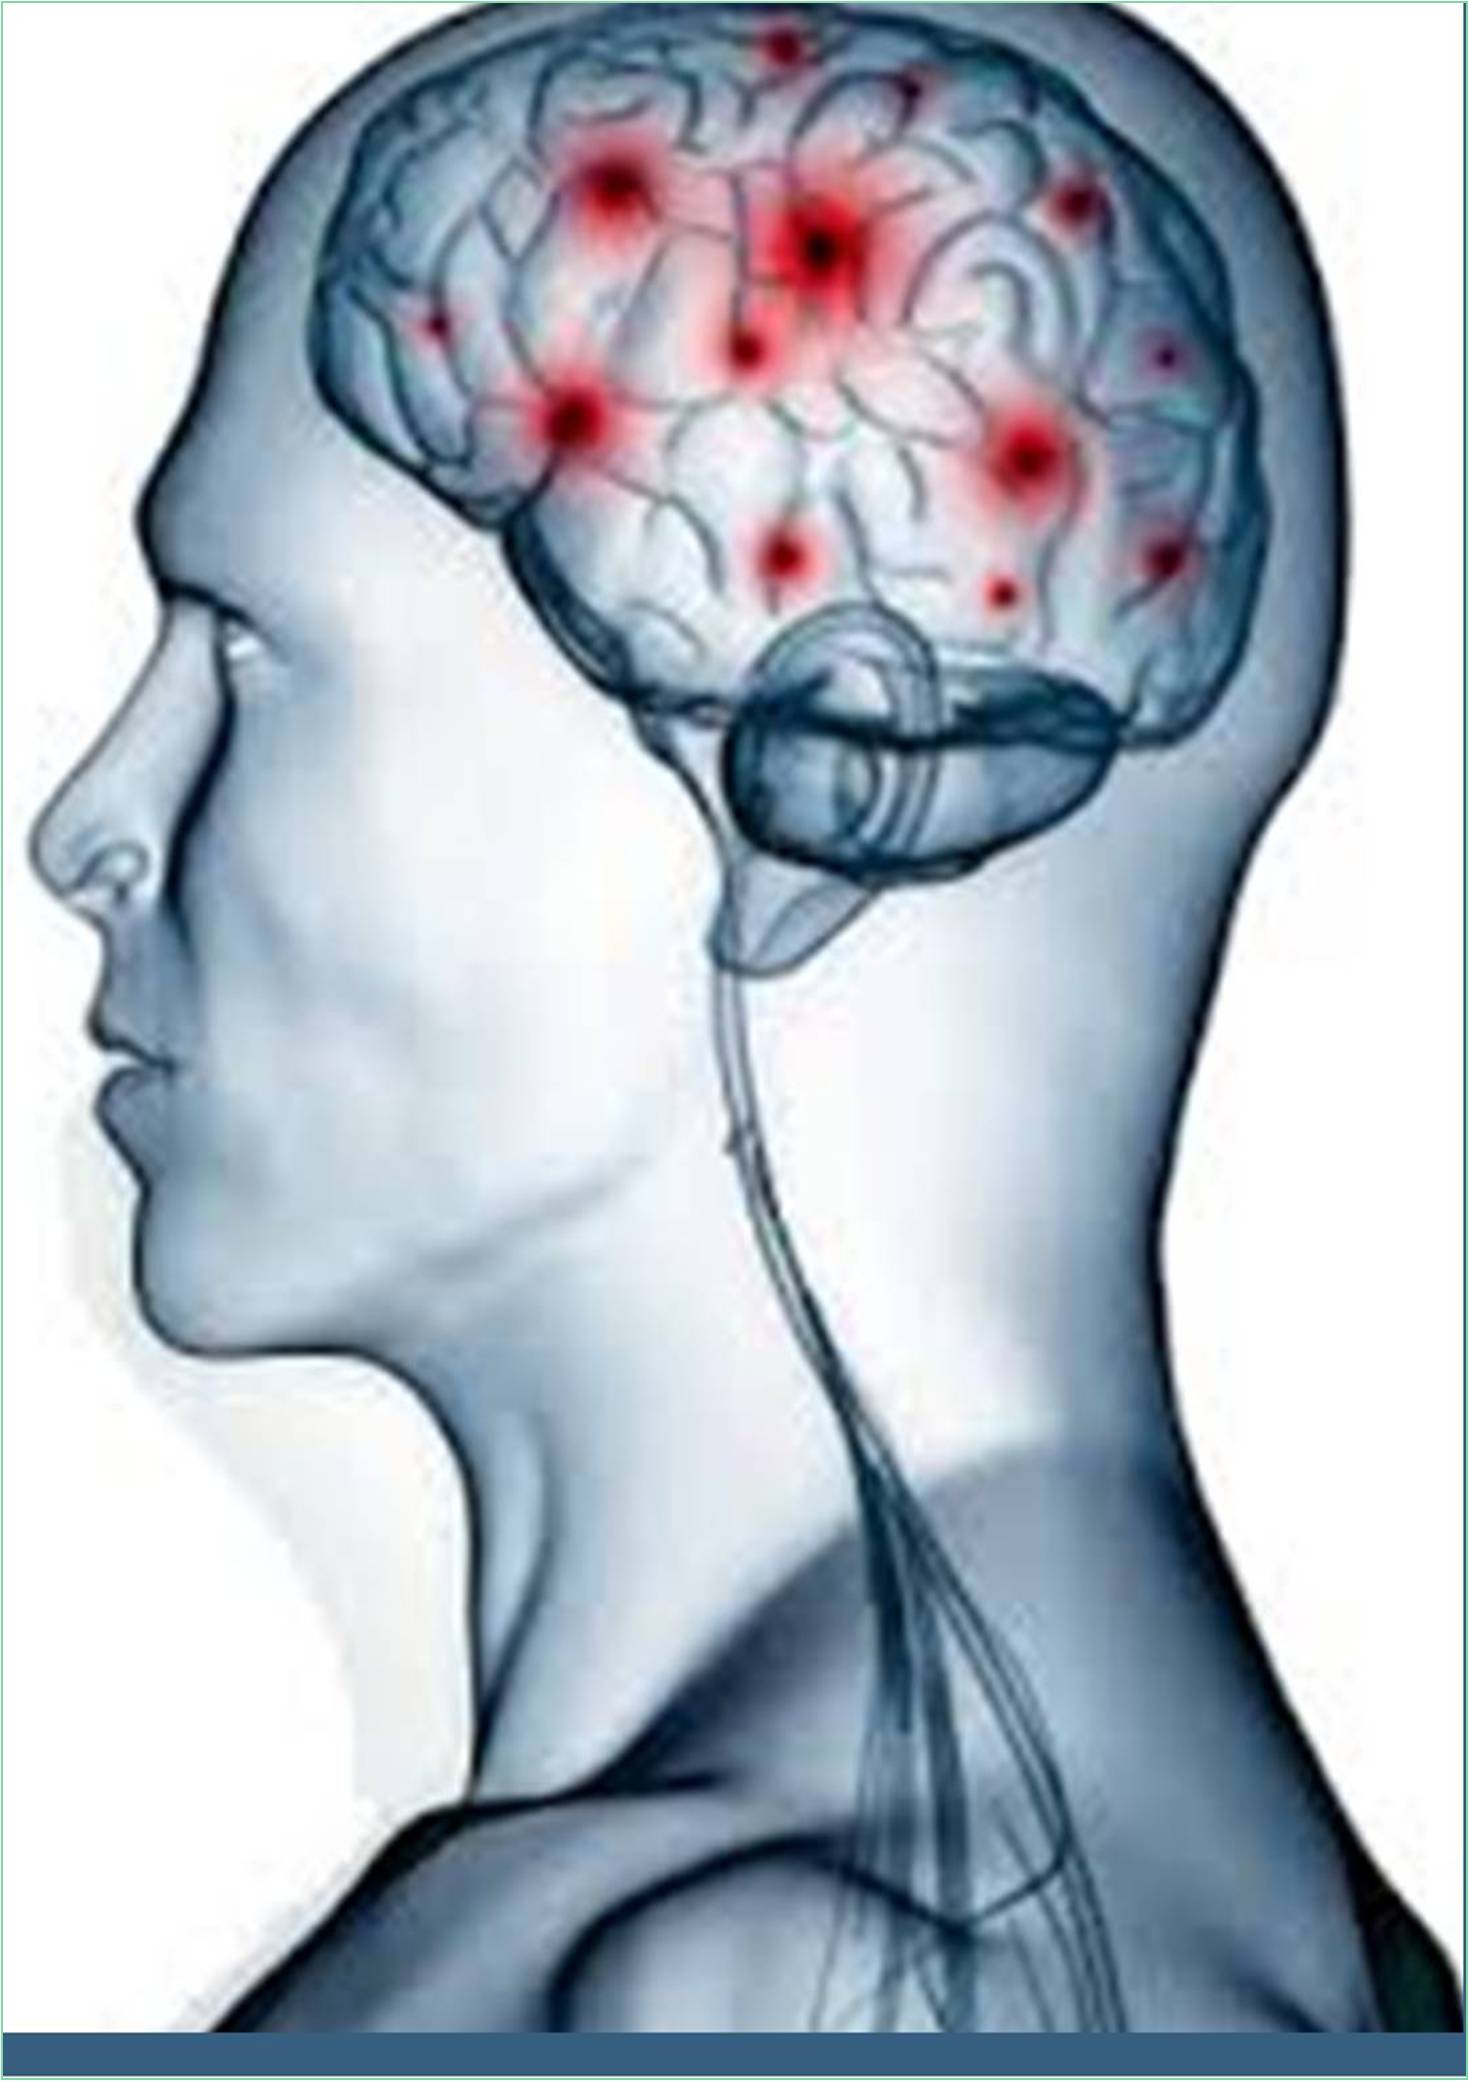 global-journal-of-neurology-and-neurosurgery-banner.jpg